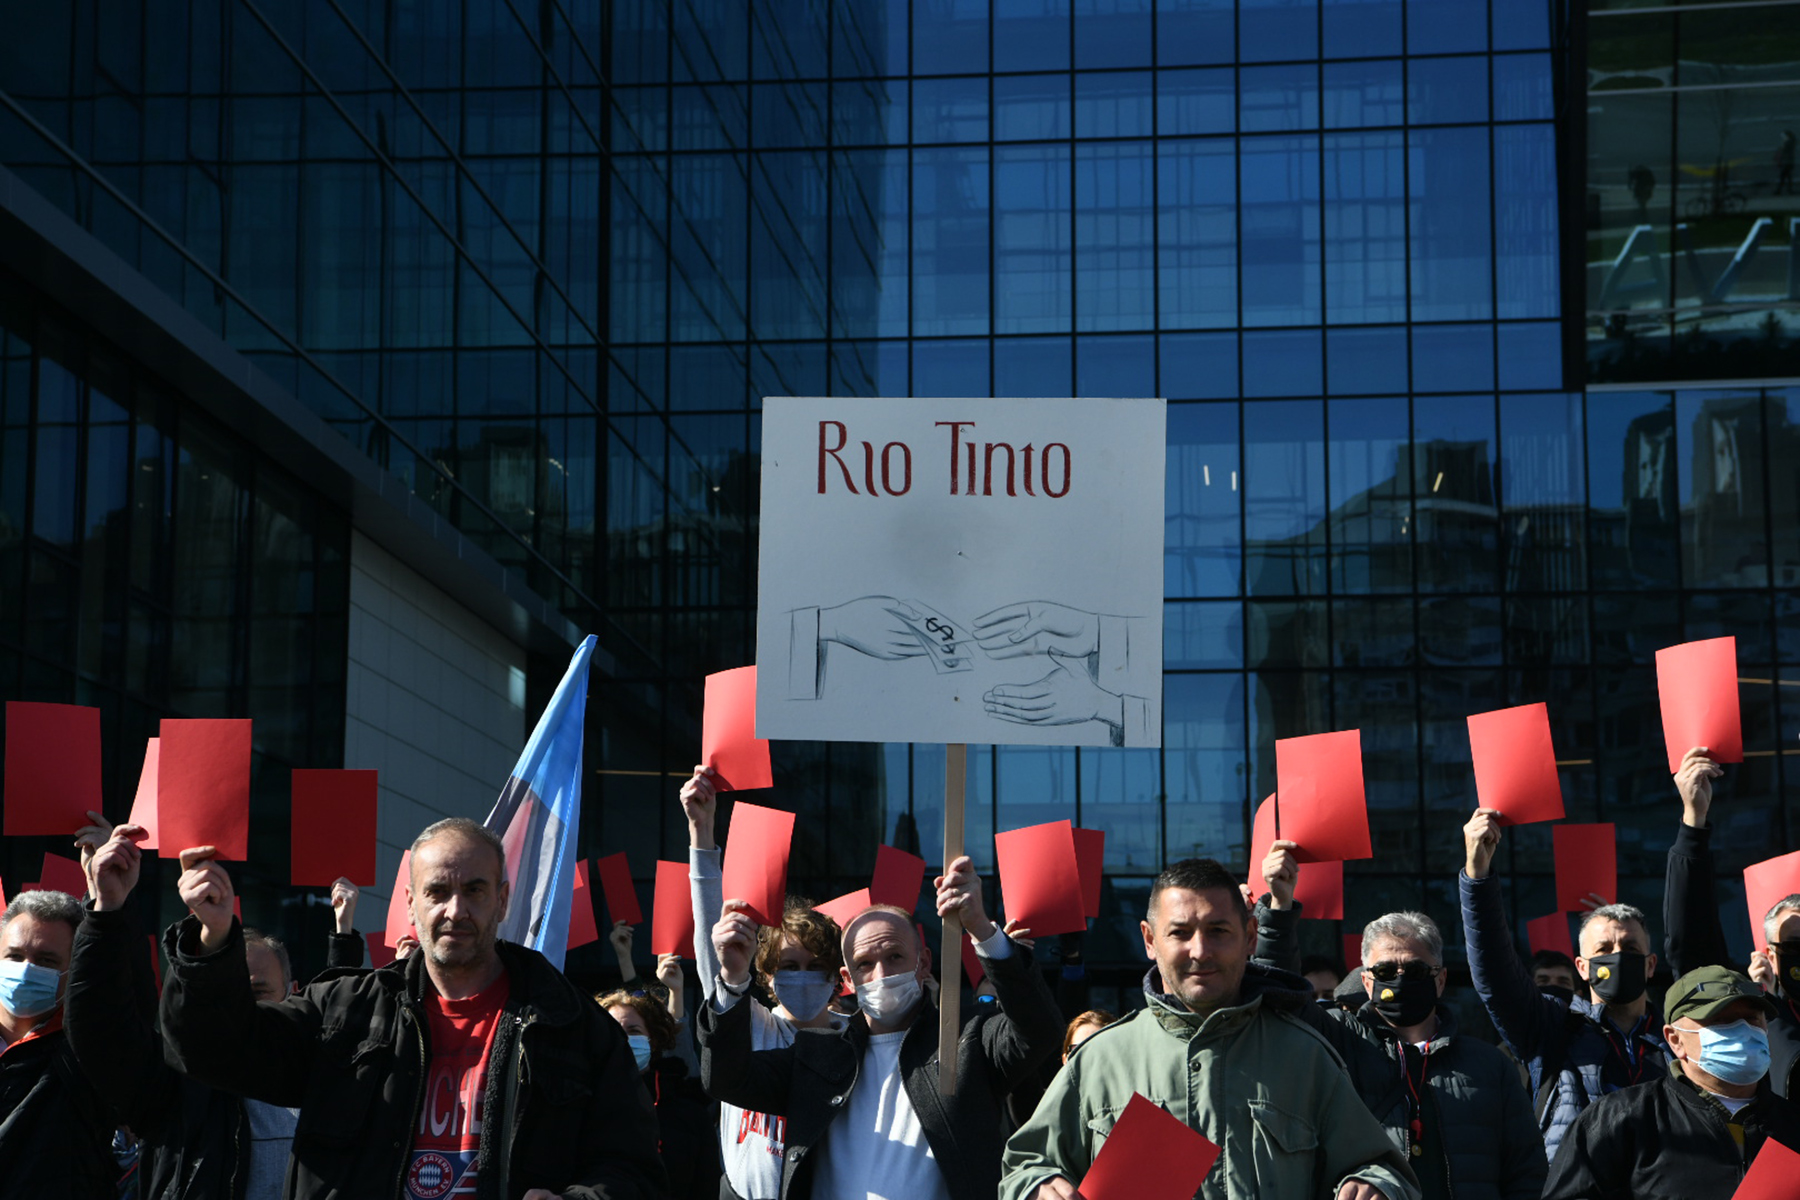 Rio Tinto protest